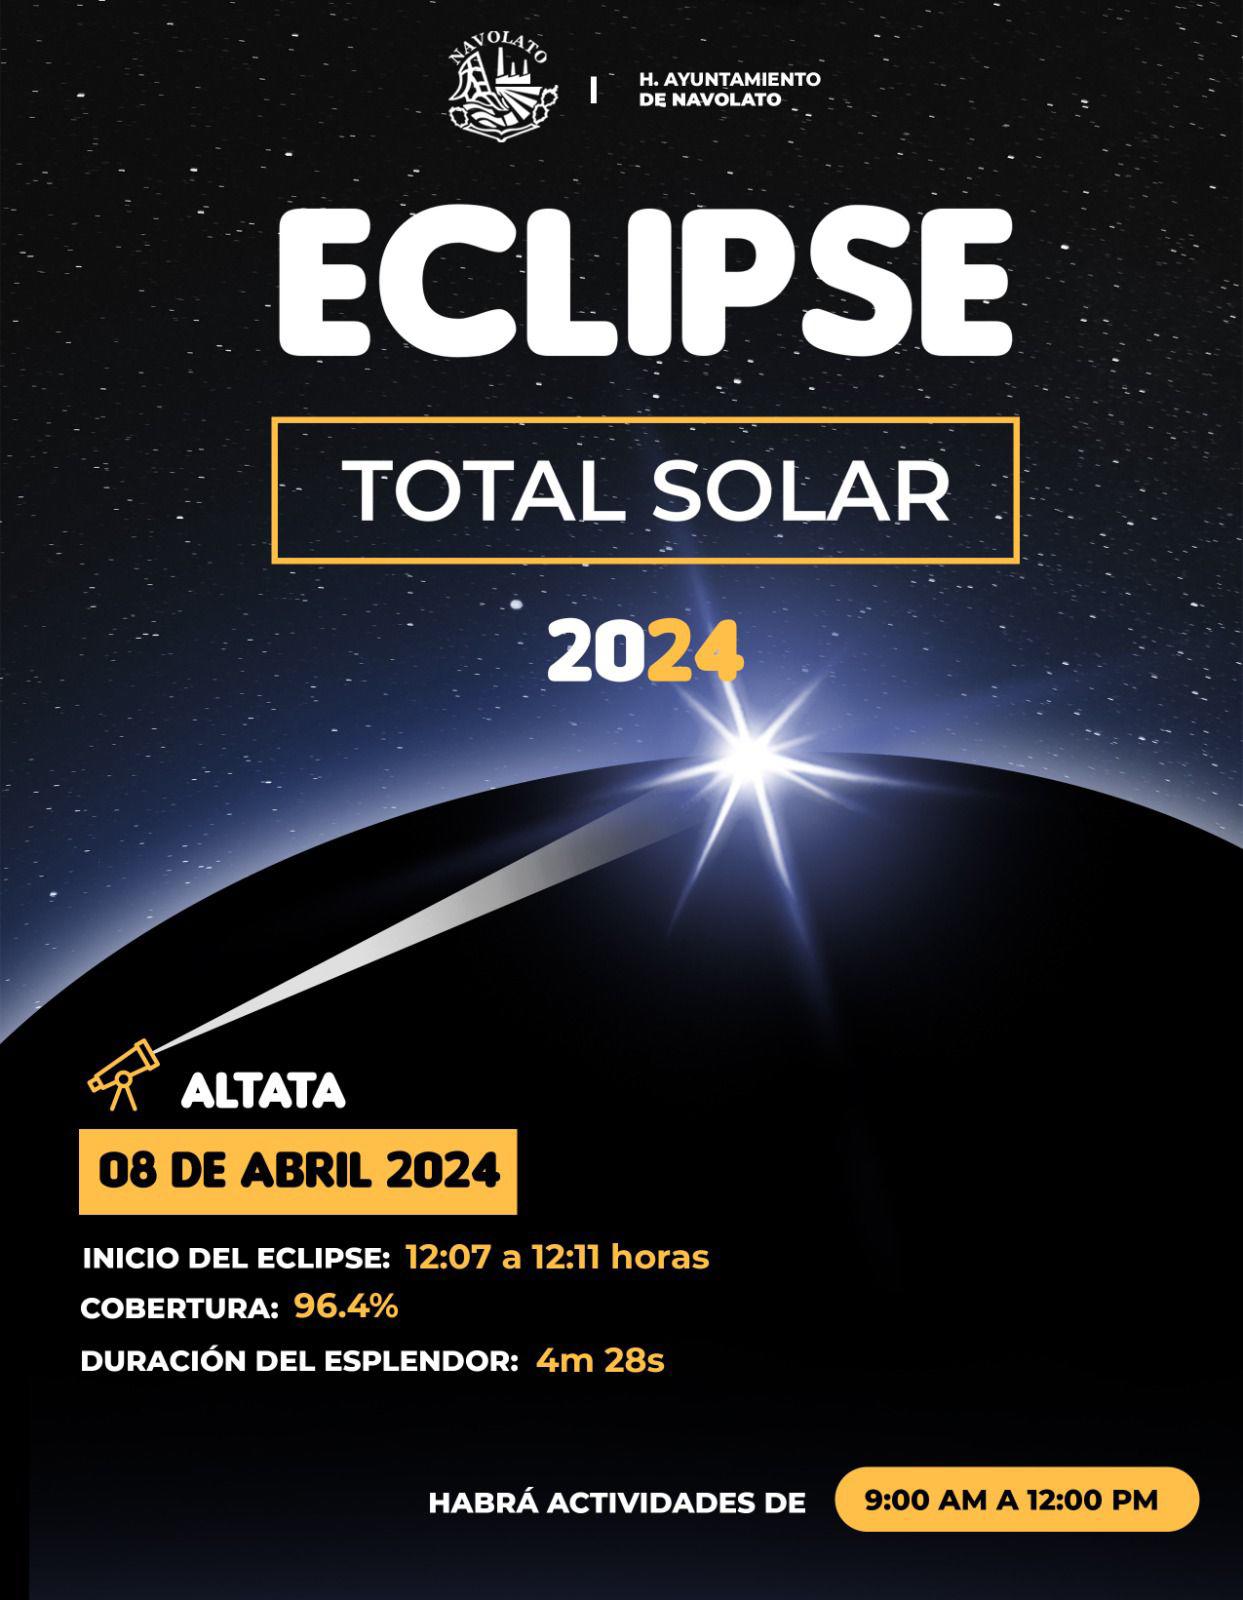 $!Invitan a apreciar el eclipse solar desde la explanada de Altata; se entregarán lentes gratis